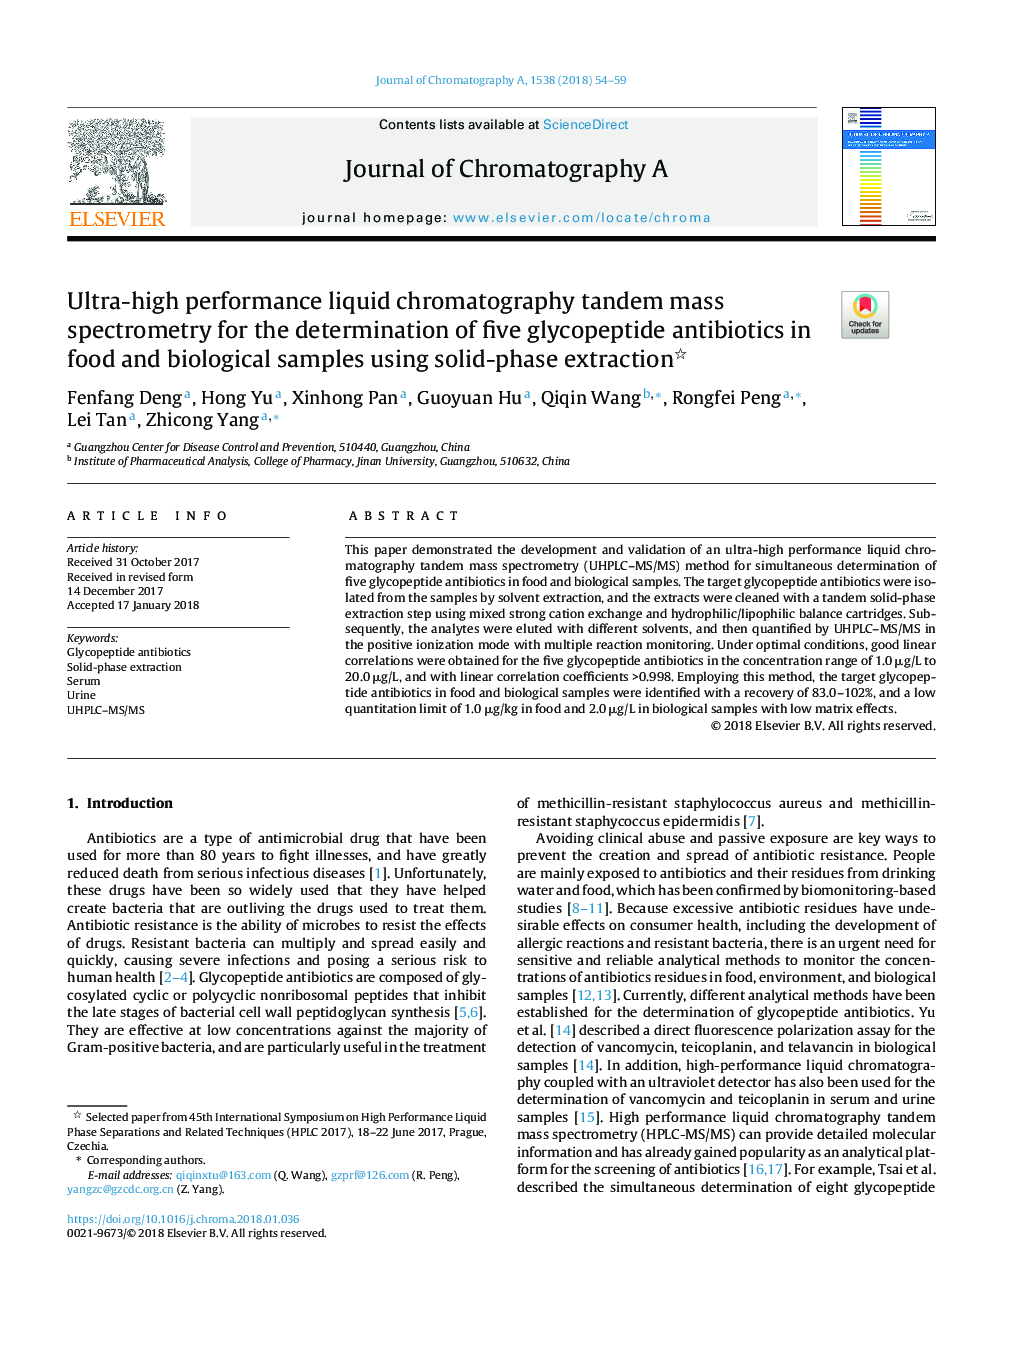 طیف سنجی جرمی کروماتوگرافی مایع با کارایی بالا برای تعیین پنج آنتی بیوتیک گلیکوپپتید در نمونه های غذایی و بیولوژیکی با استفاده از استخراج جامد فاز 